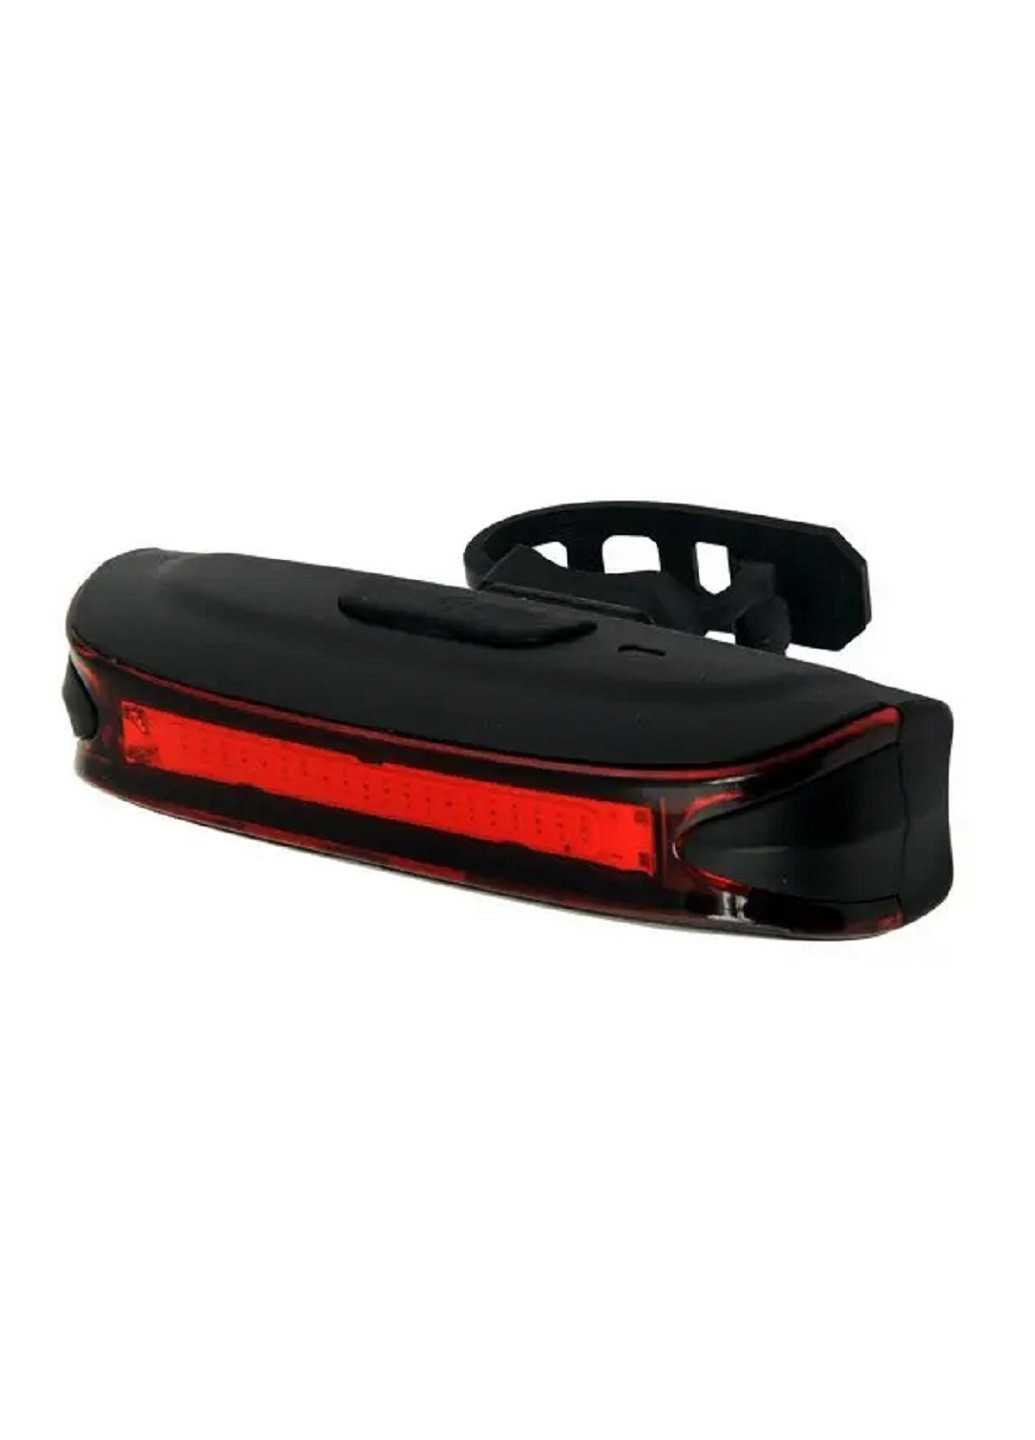 Задний свет для велосипеда освещение фонарь мигалка с мощными светодиодами 5 режимов на аккумуляторе USB 65 Lm (22382-Нов) Unbranded (253484236)